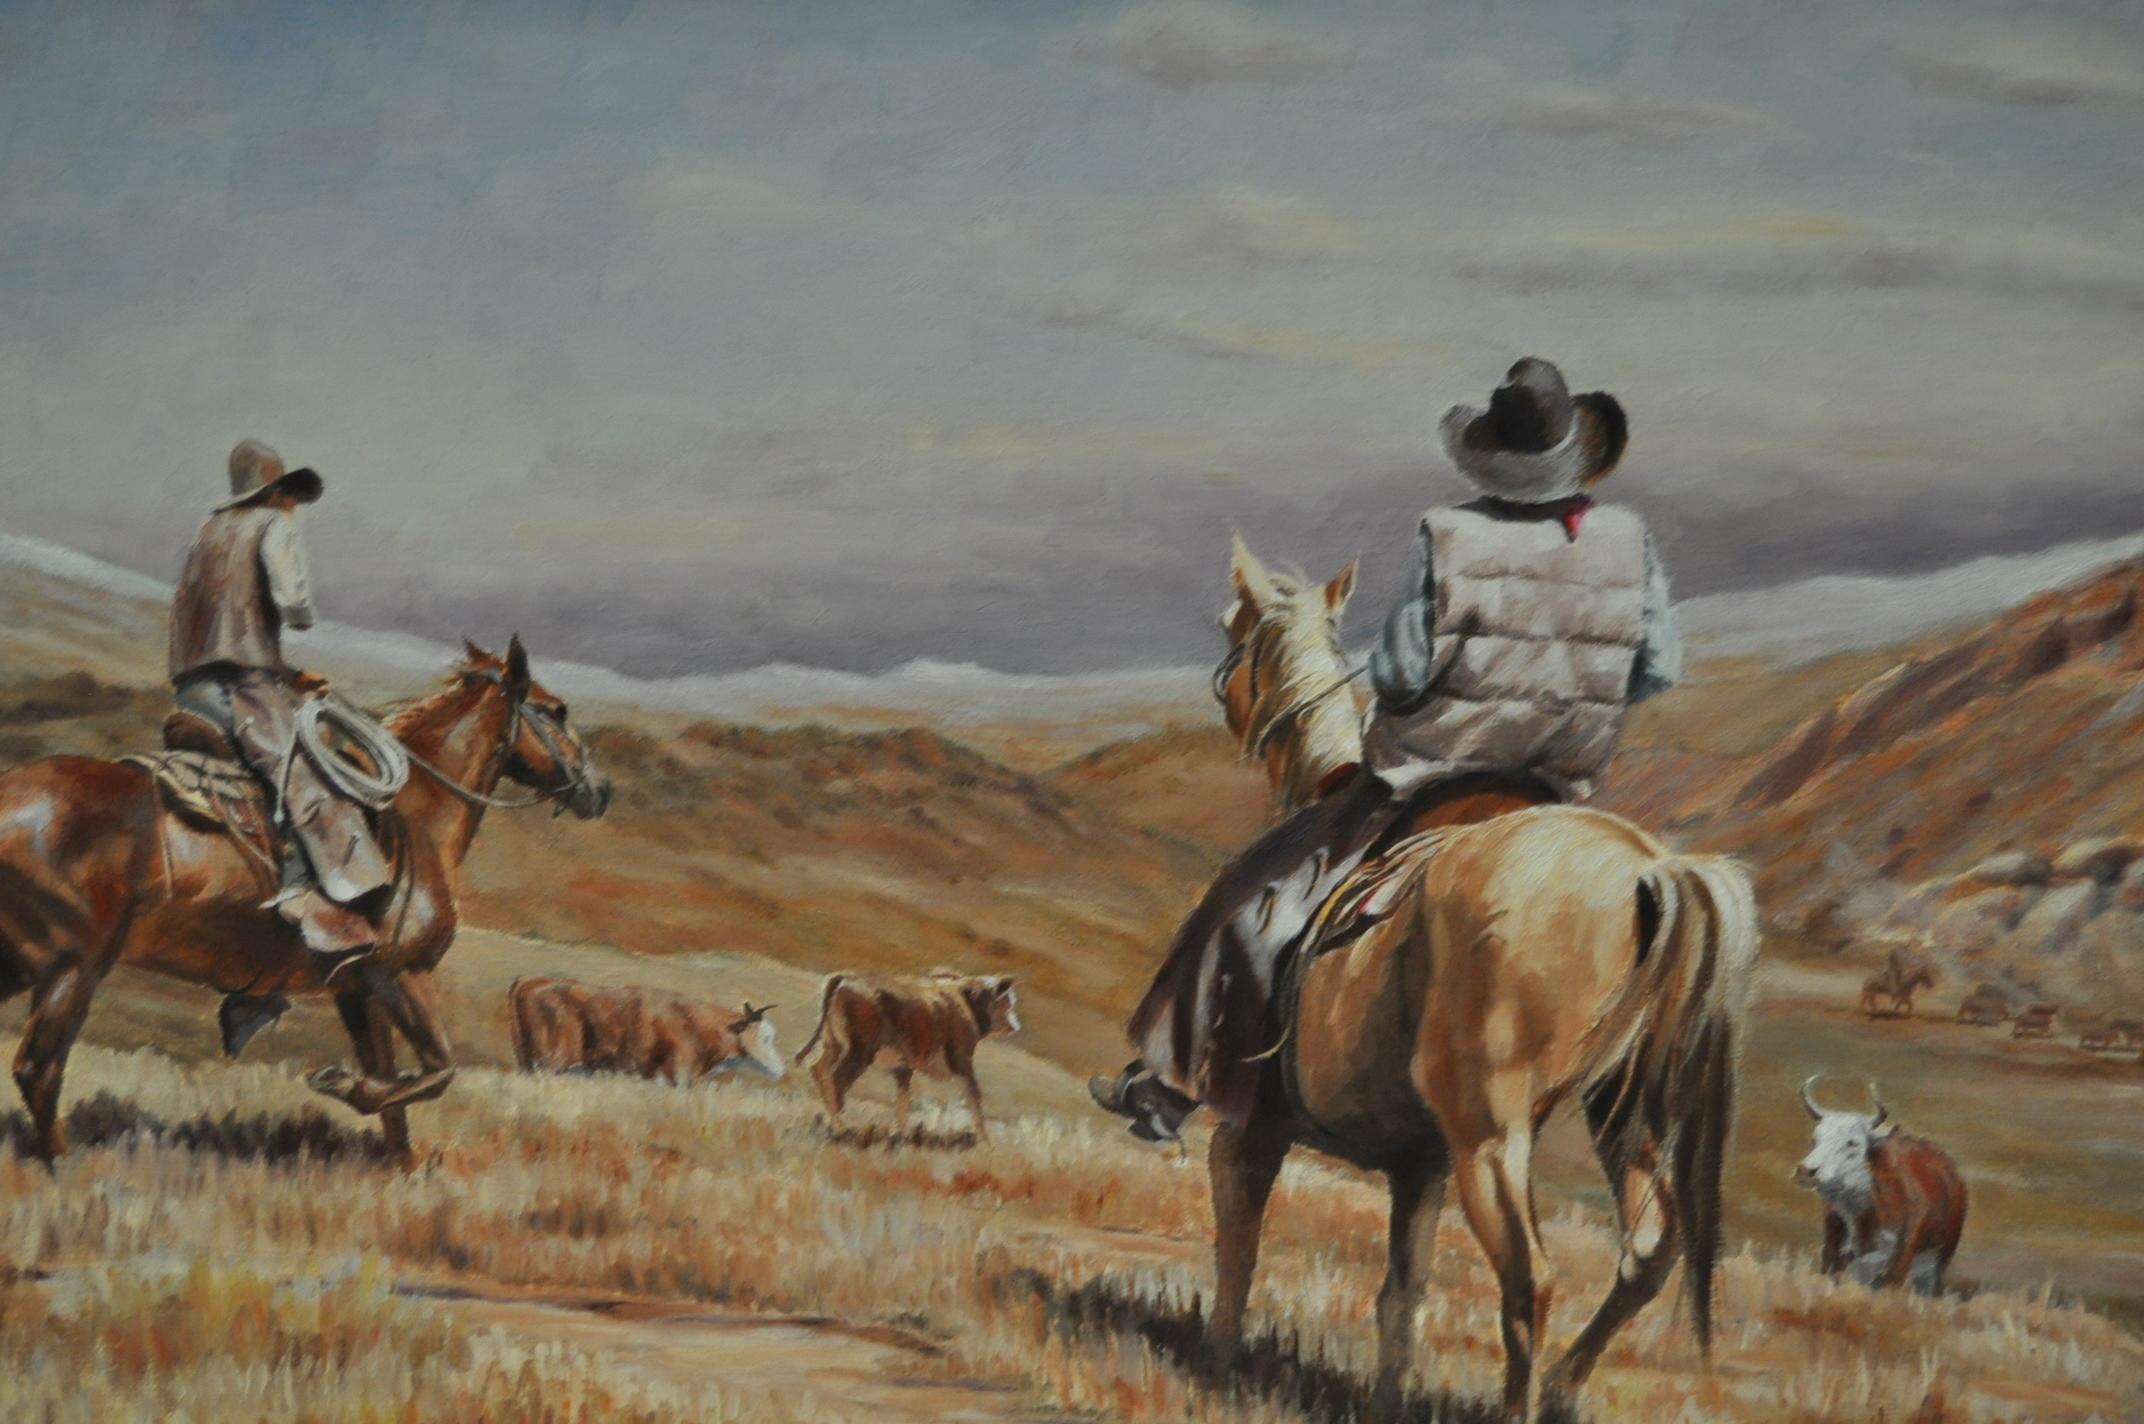 Burt dinius, peinture à l'huile, tournée d'automne, circa 1982

Peinture d'art western de l'artiste Burt Dinius, circa 1982, signée en bas à gauche.

Cette peinture à l'huile sur carton montre des cow-boys pendant le 